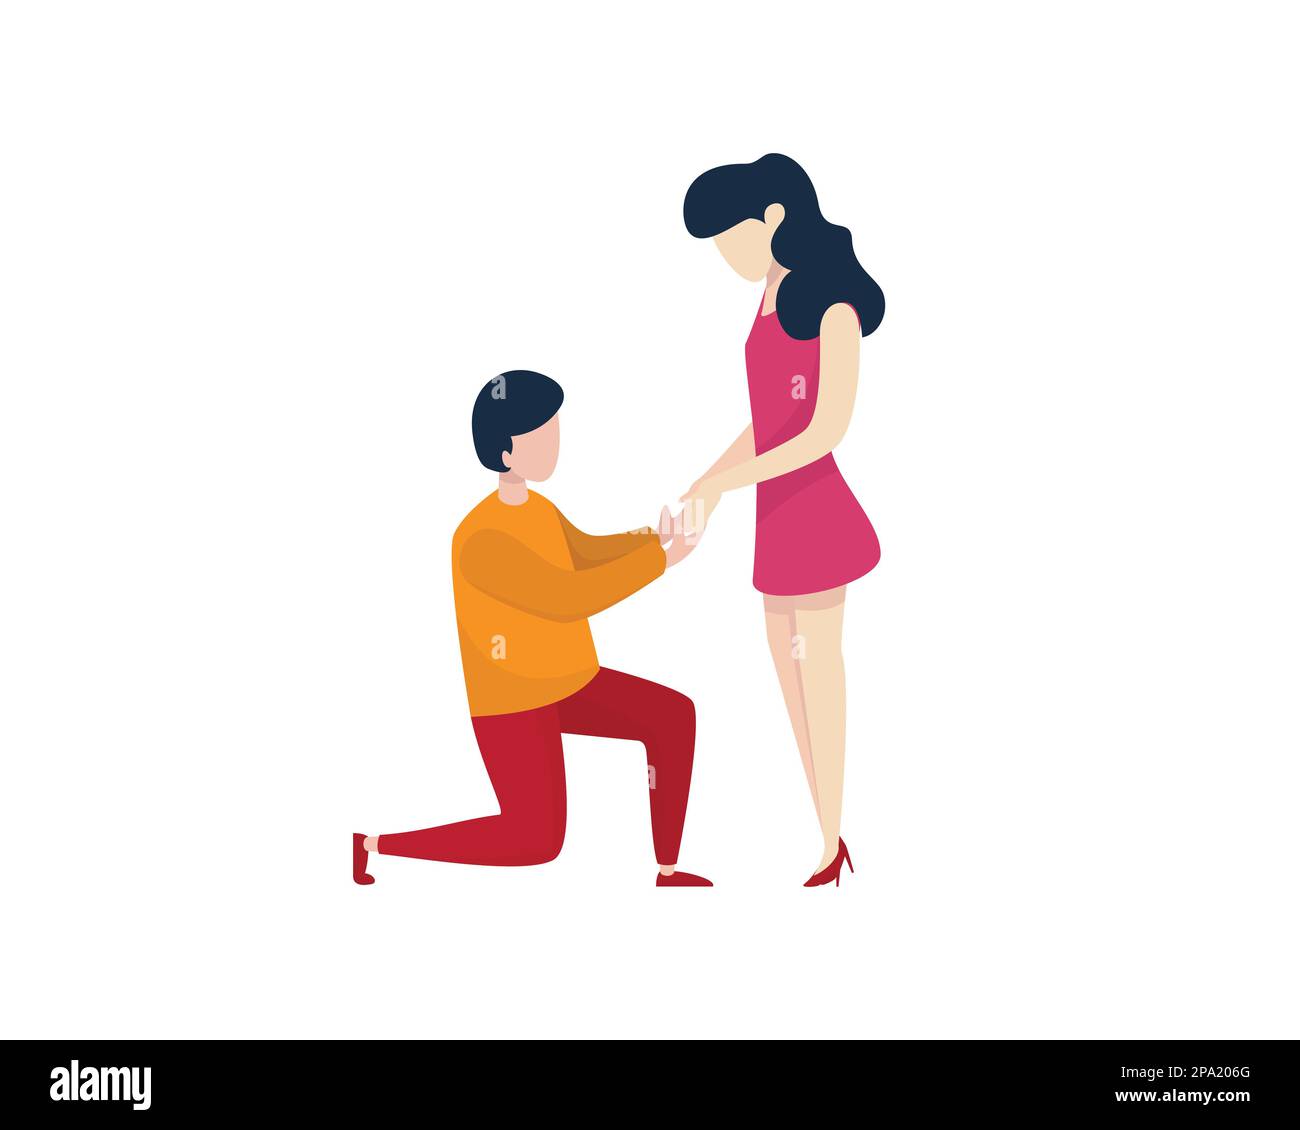 Romantique Homme en bas sur un genou et proposer à la femme visualisé avec une illustration simple Illustration de Vecteur